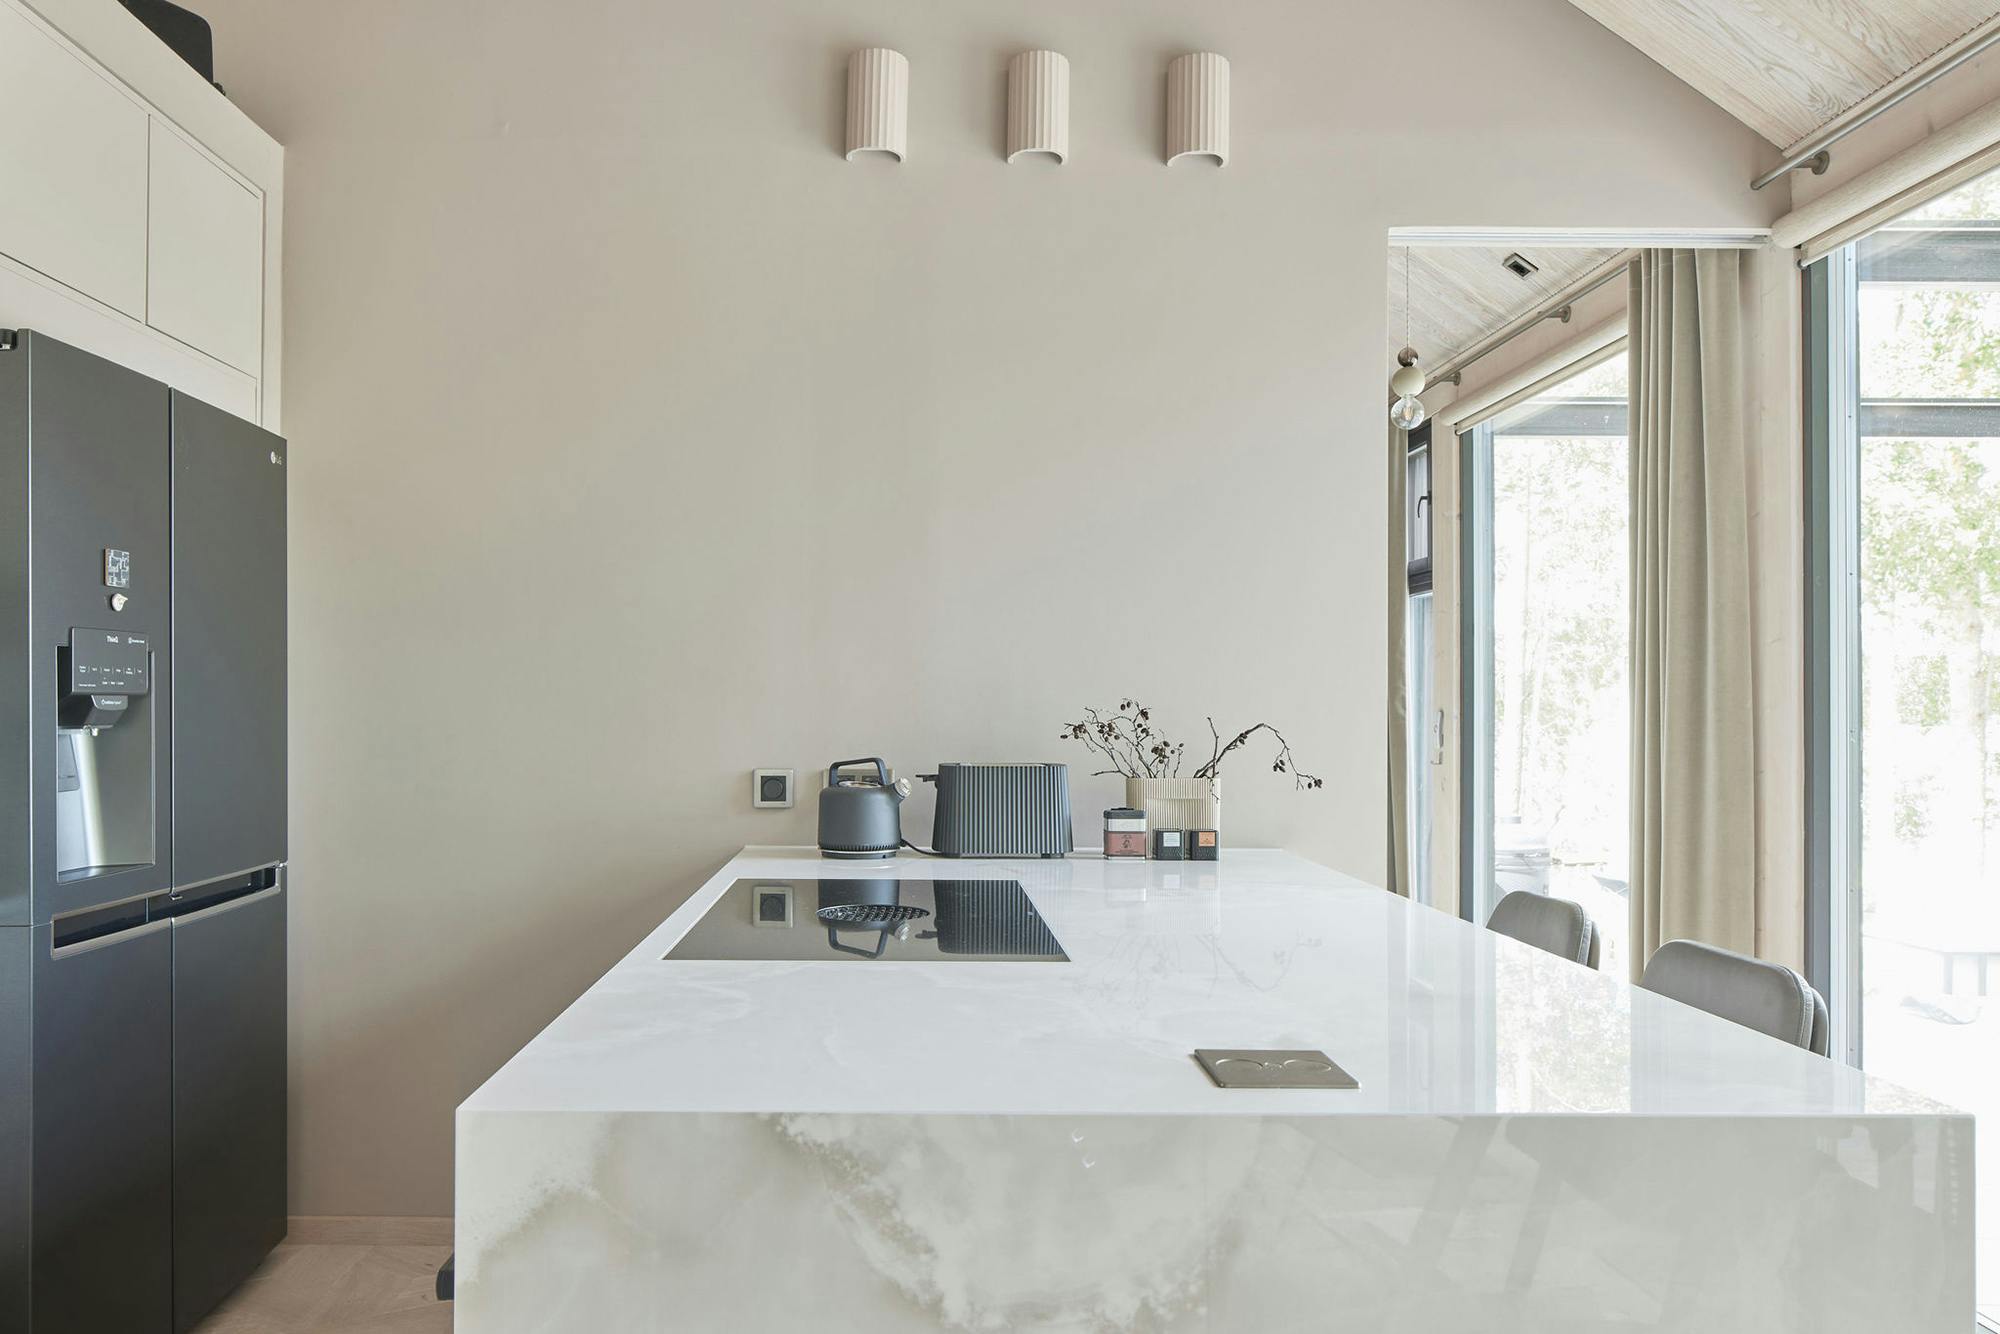 Imagen número 93 de Una cocina clásica pero minimalista con Dekton aportando elegancia y funcionalidad